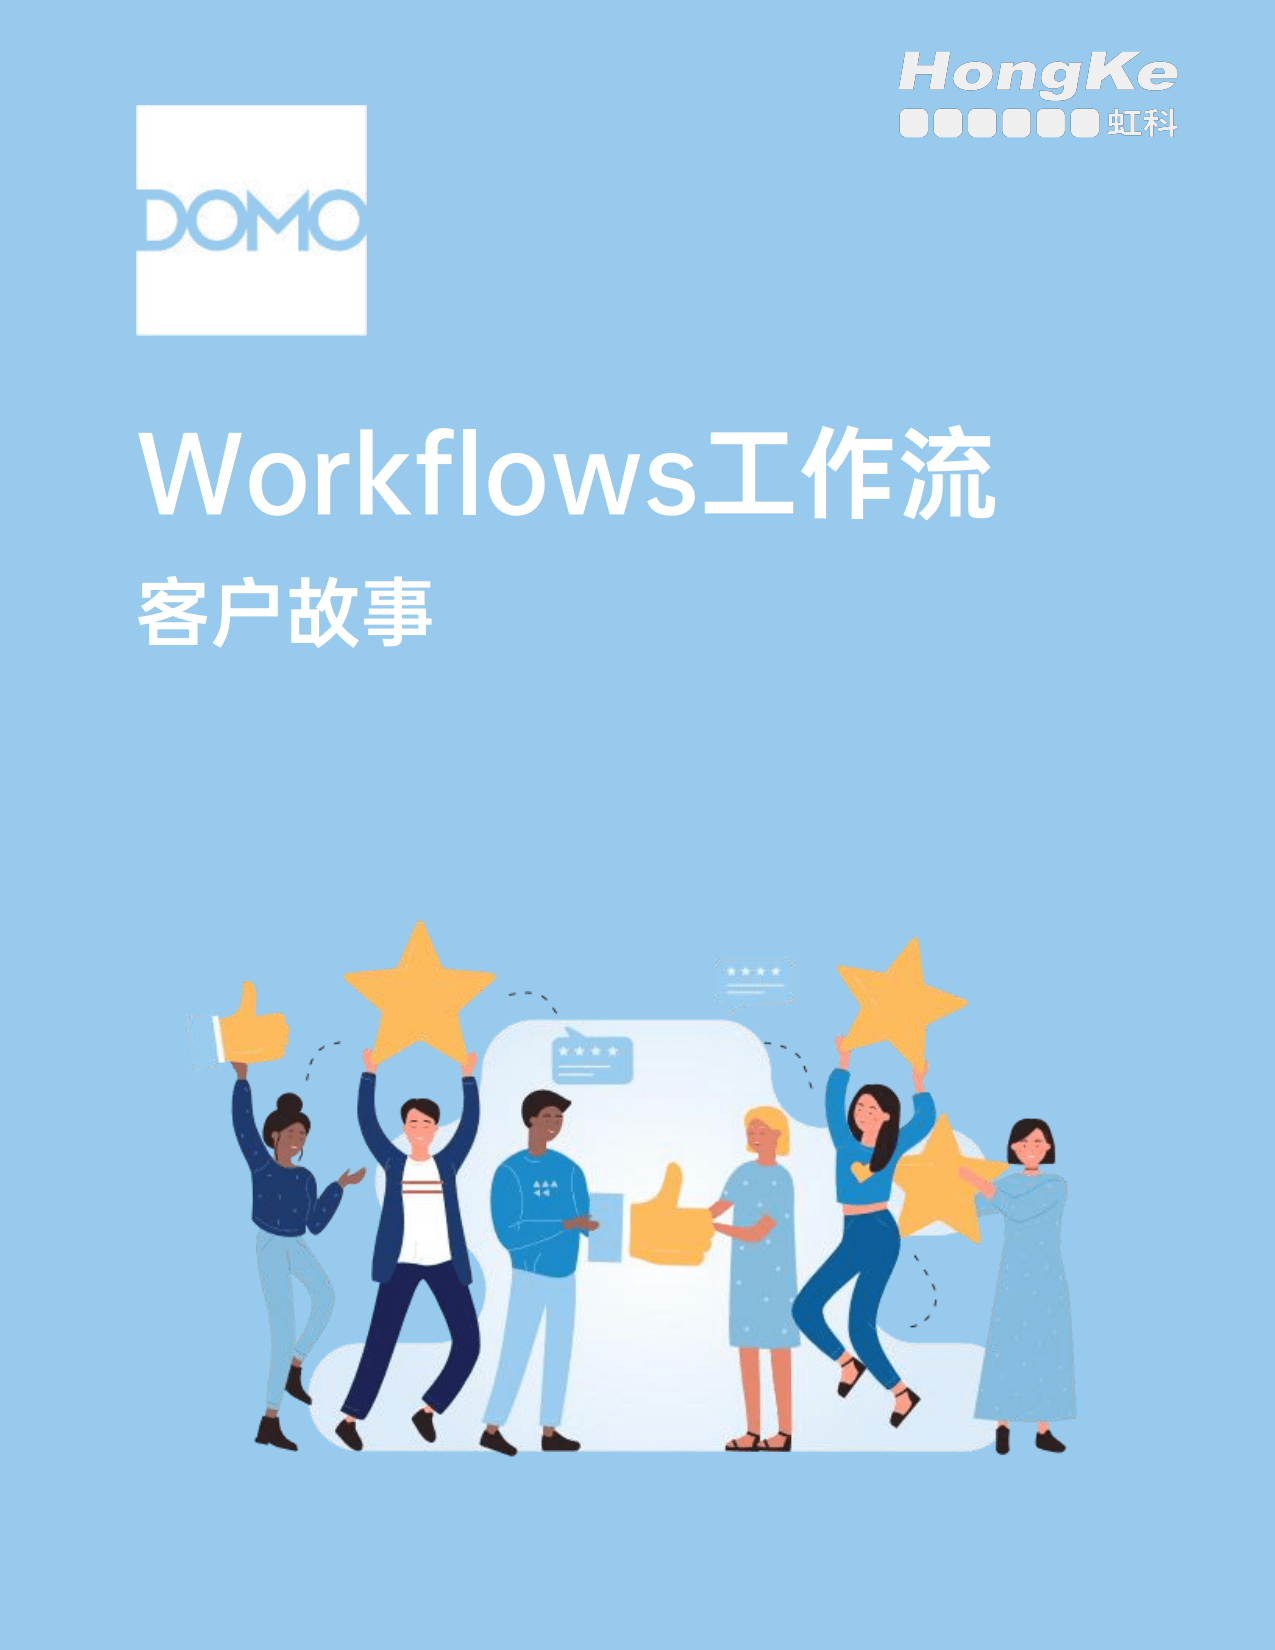 虹科Domo白皮书-Workflows工作流客户故事_00